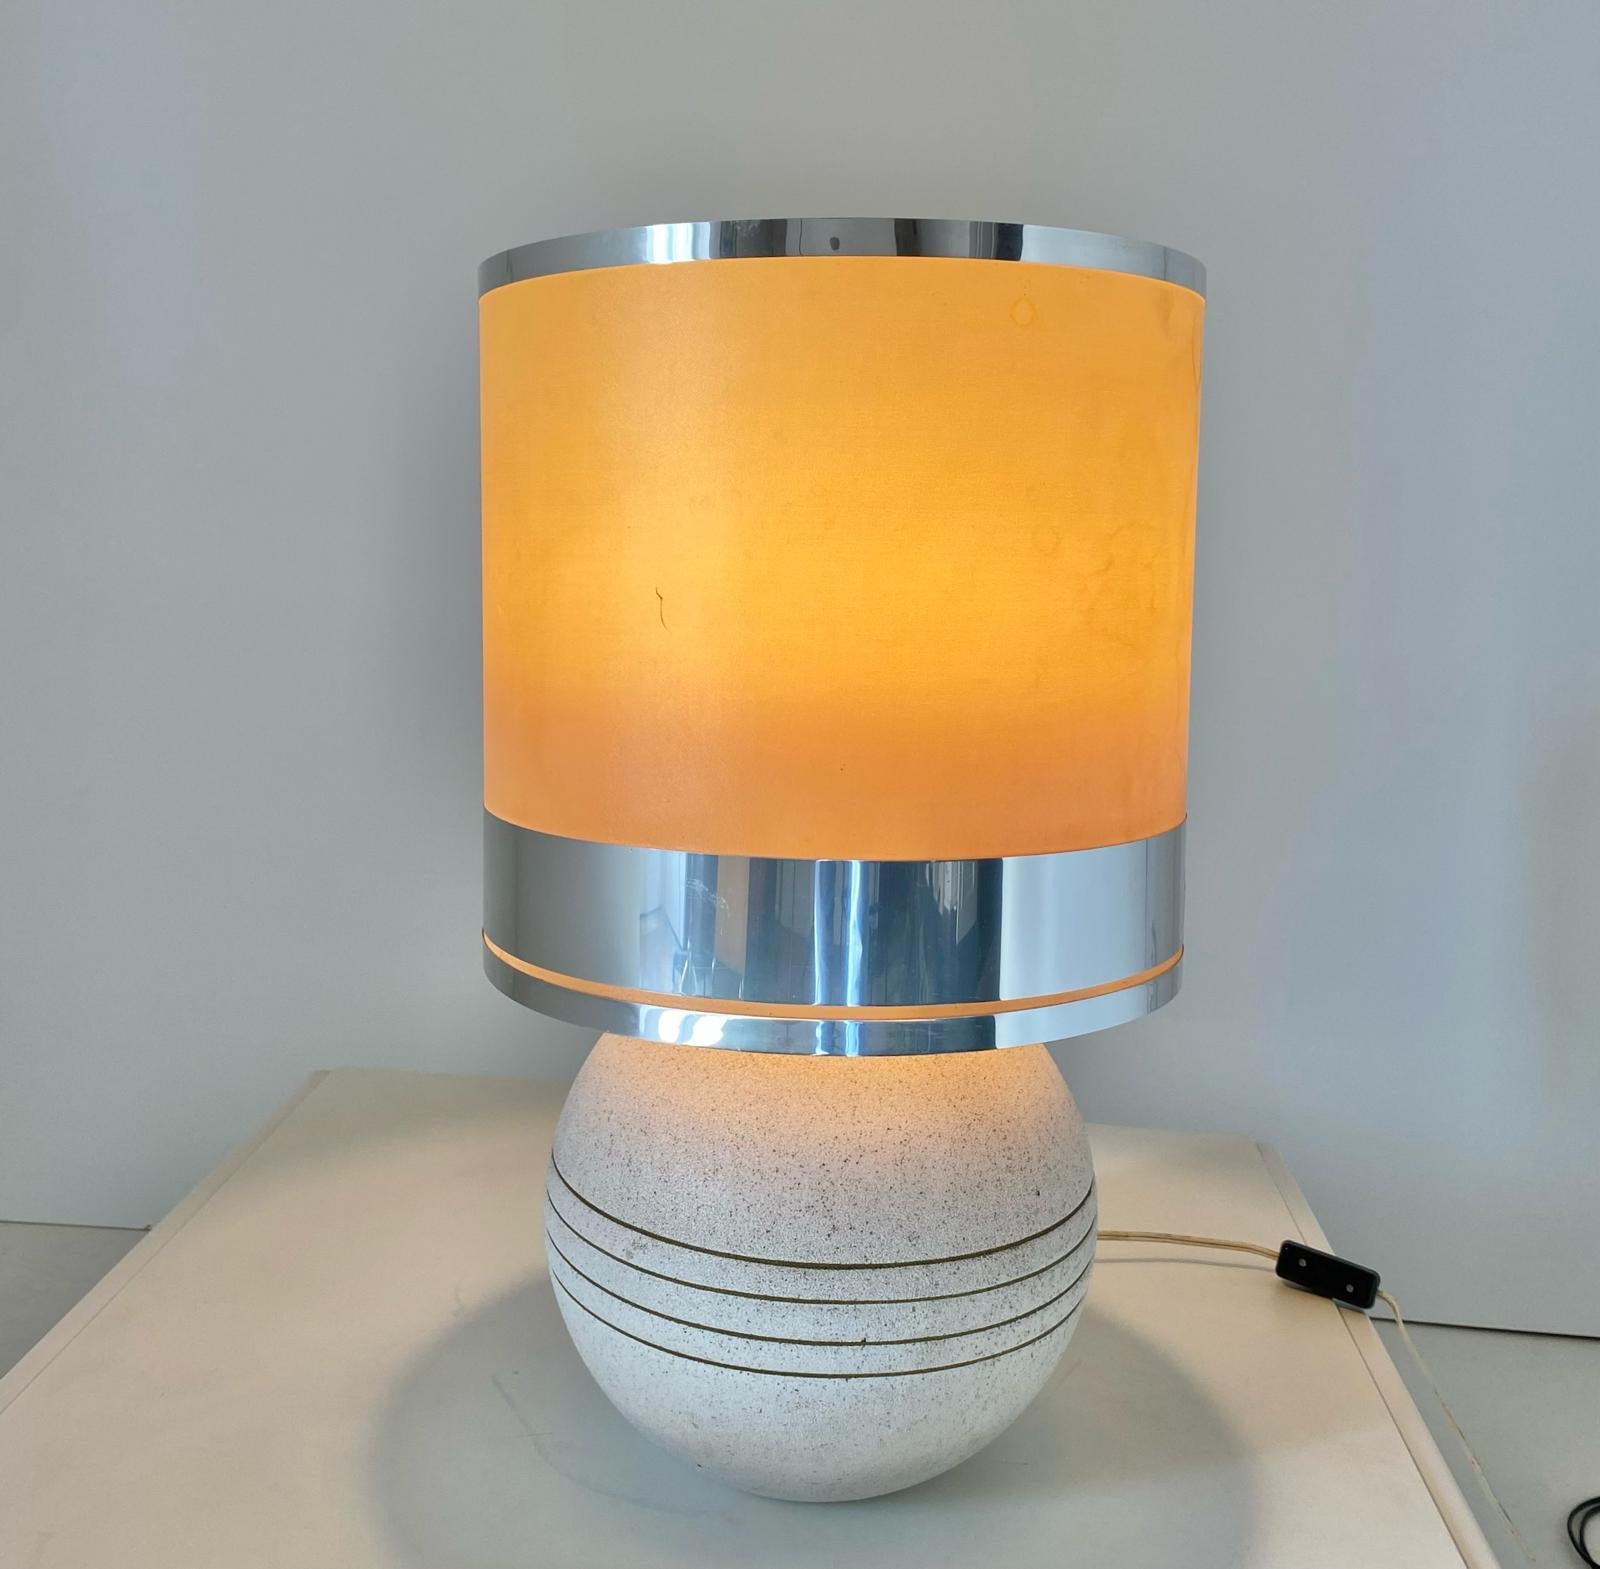 Lampe de table en céramique des années 1970 attribuée au fabricant Reggiani, Italie. En très bon état avec des traces de temps sur l'abat-jour (voir photo).

Visitez notre page de profil pour consulter notre collection vintage originale de plus de